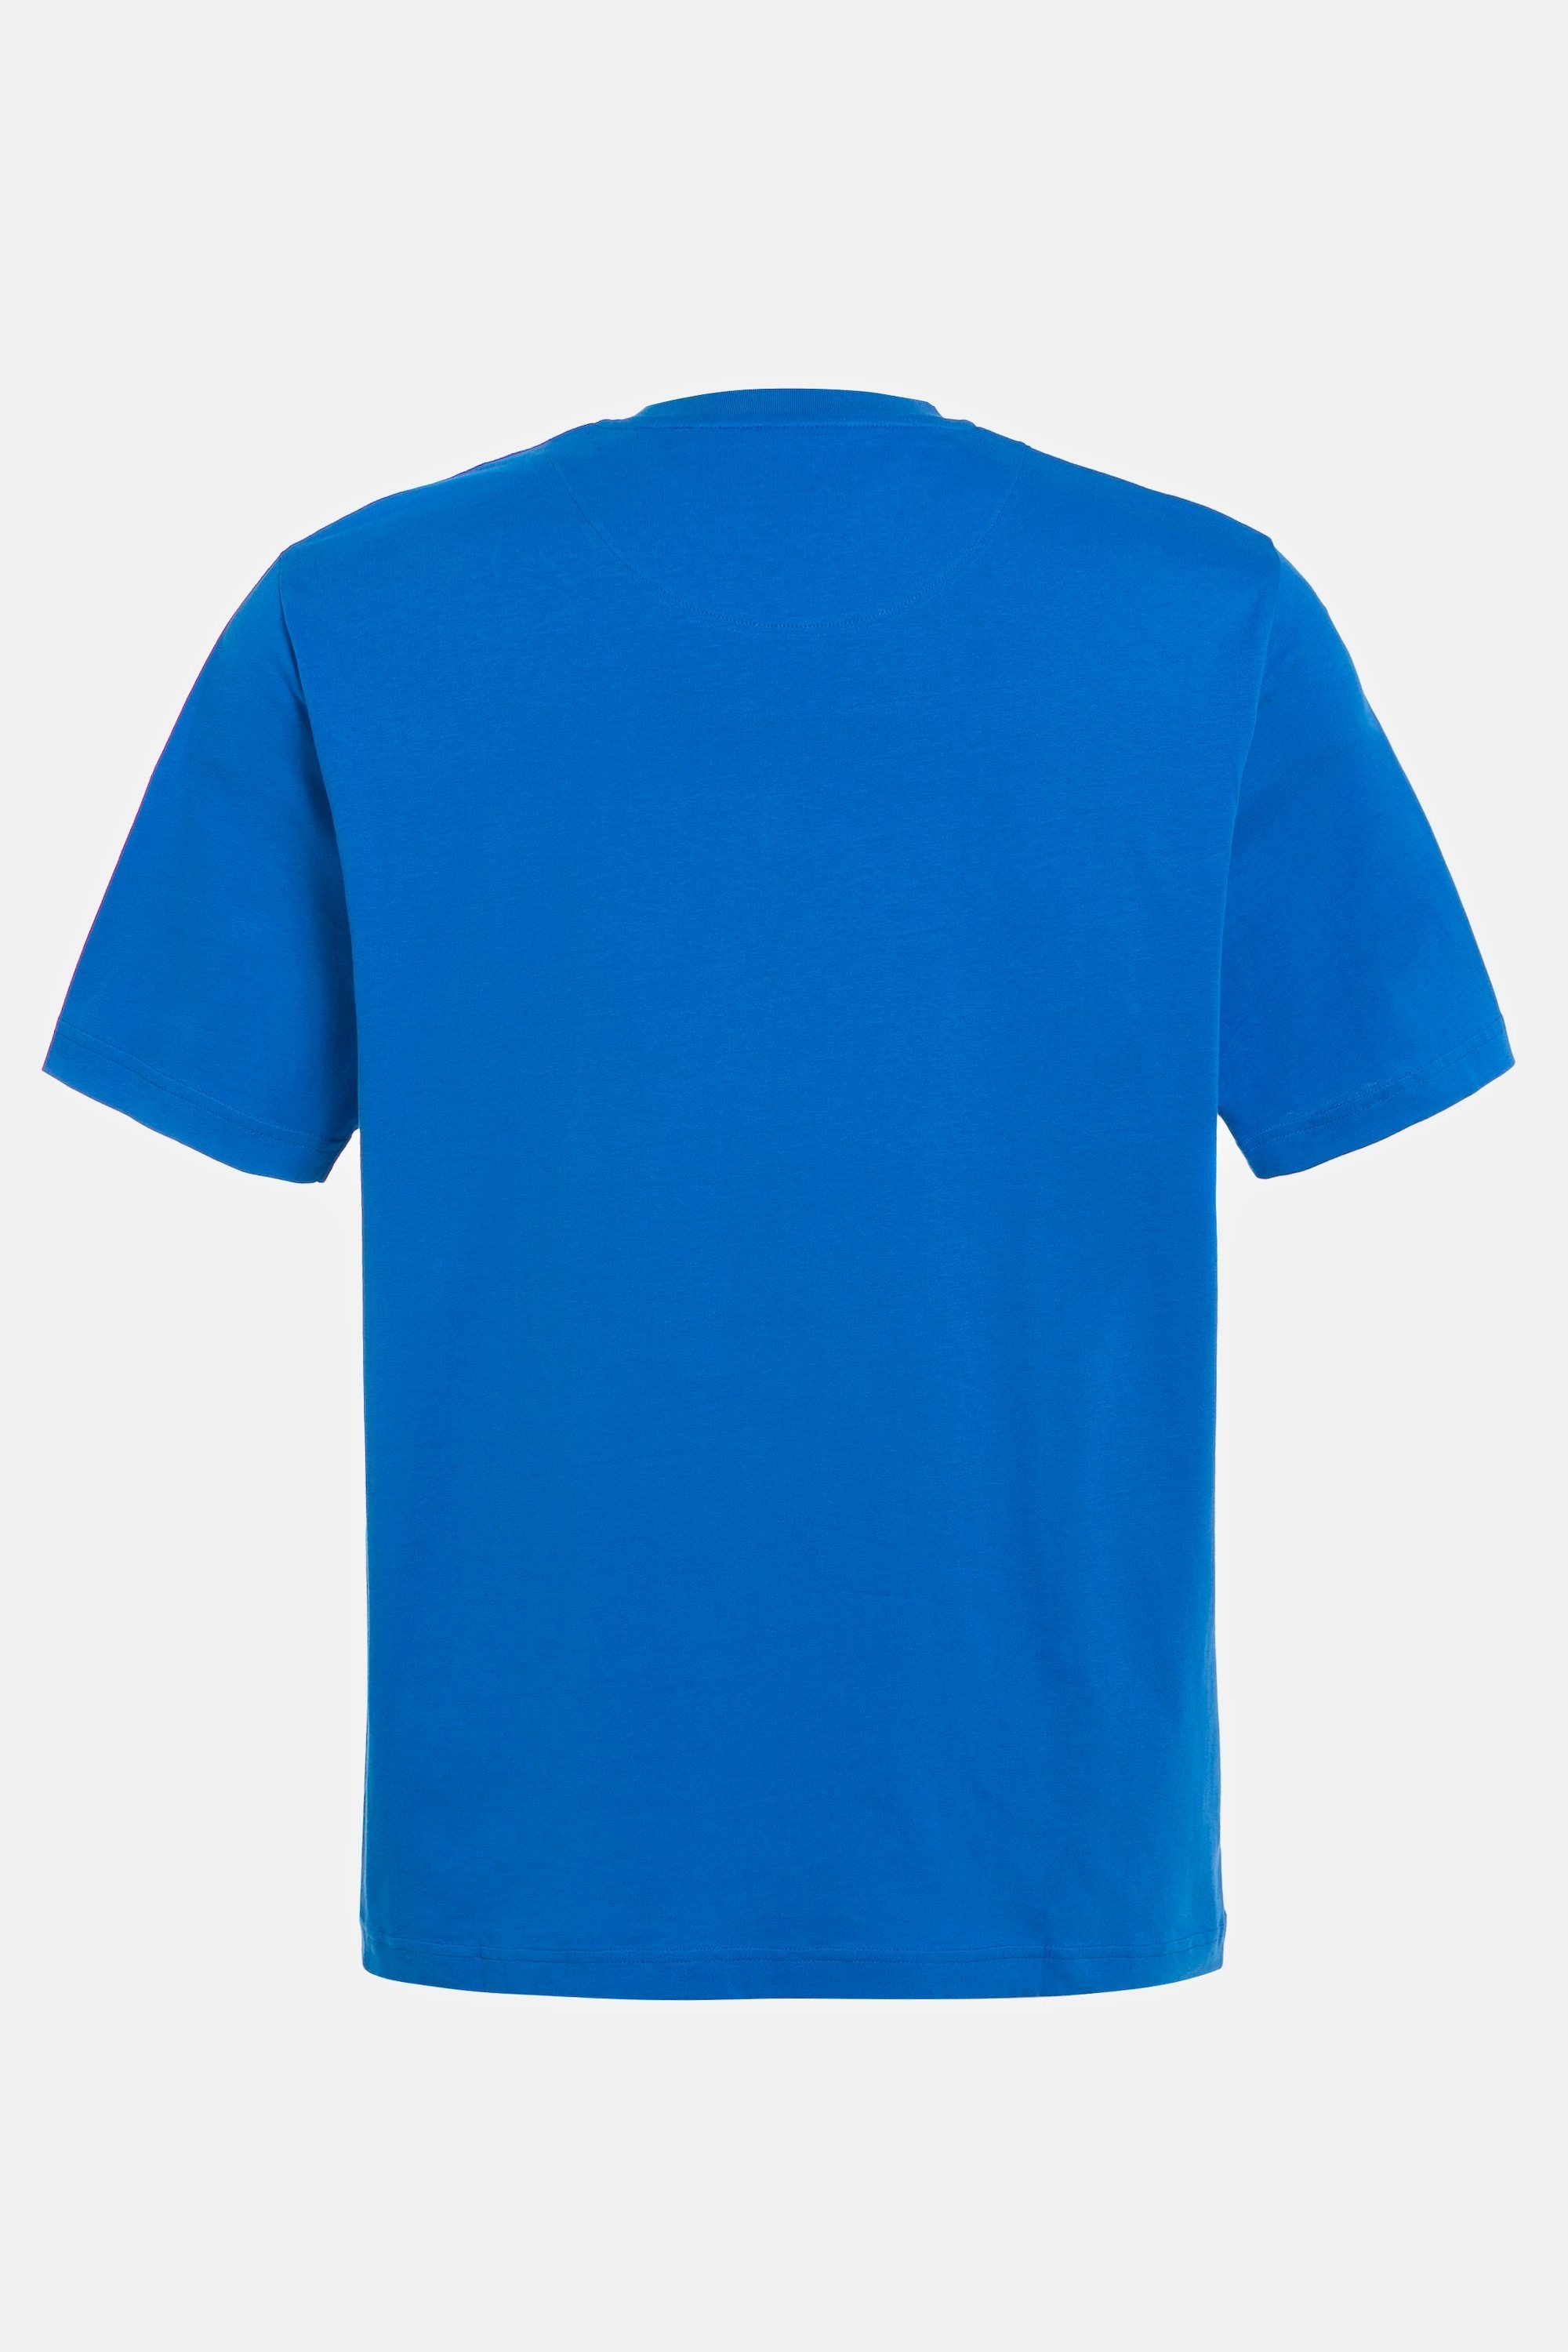 T-Shirt T-Shirt Halbarm clematisblau Brusttasche JP1880